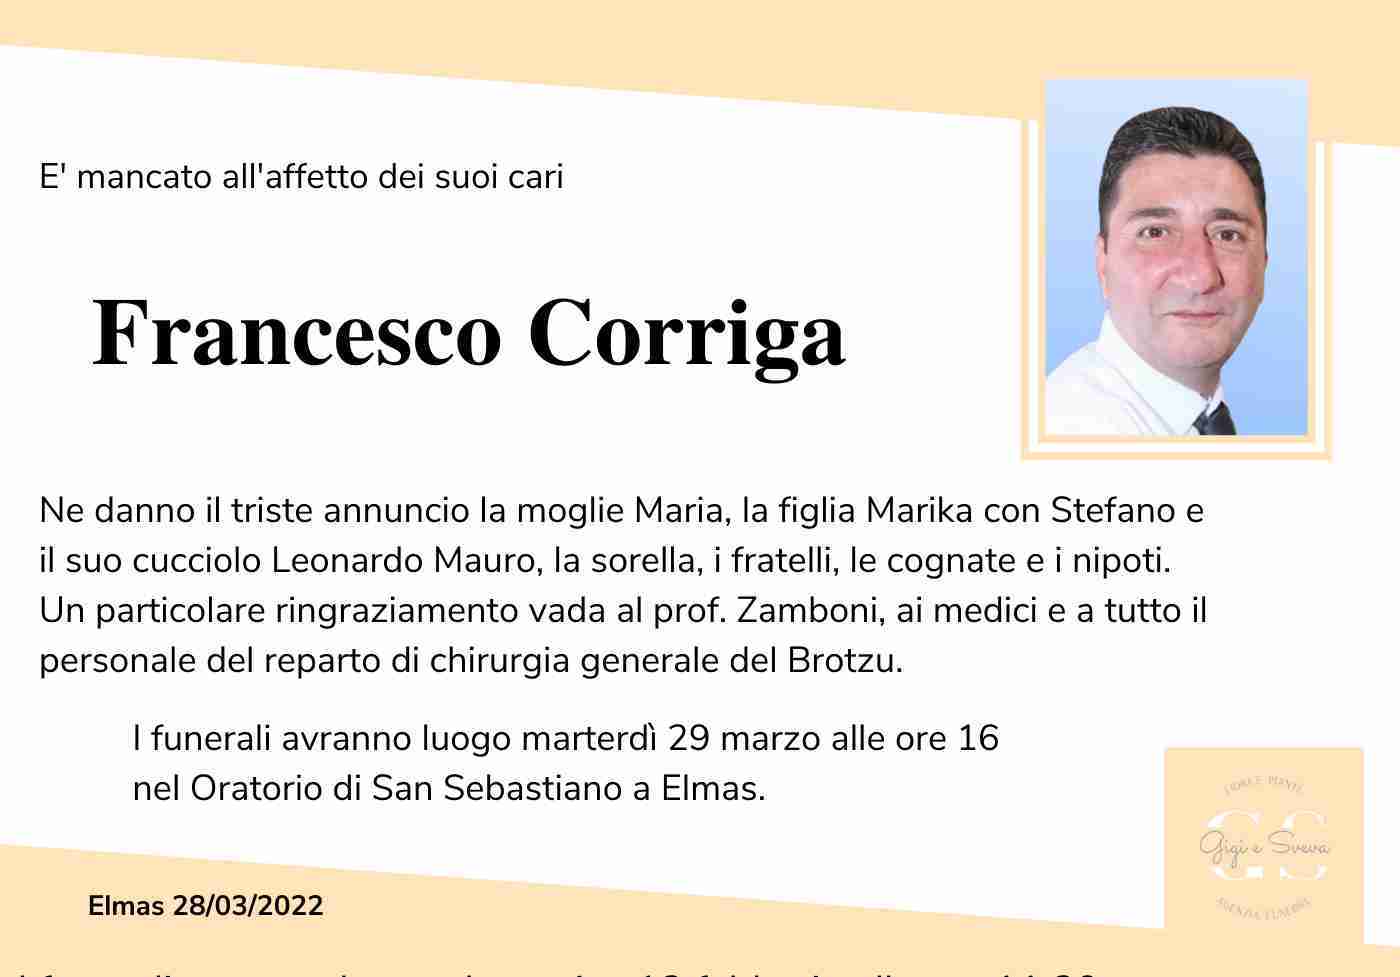 Francesco Corriga